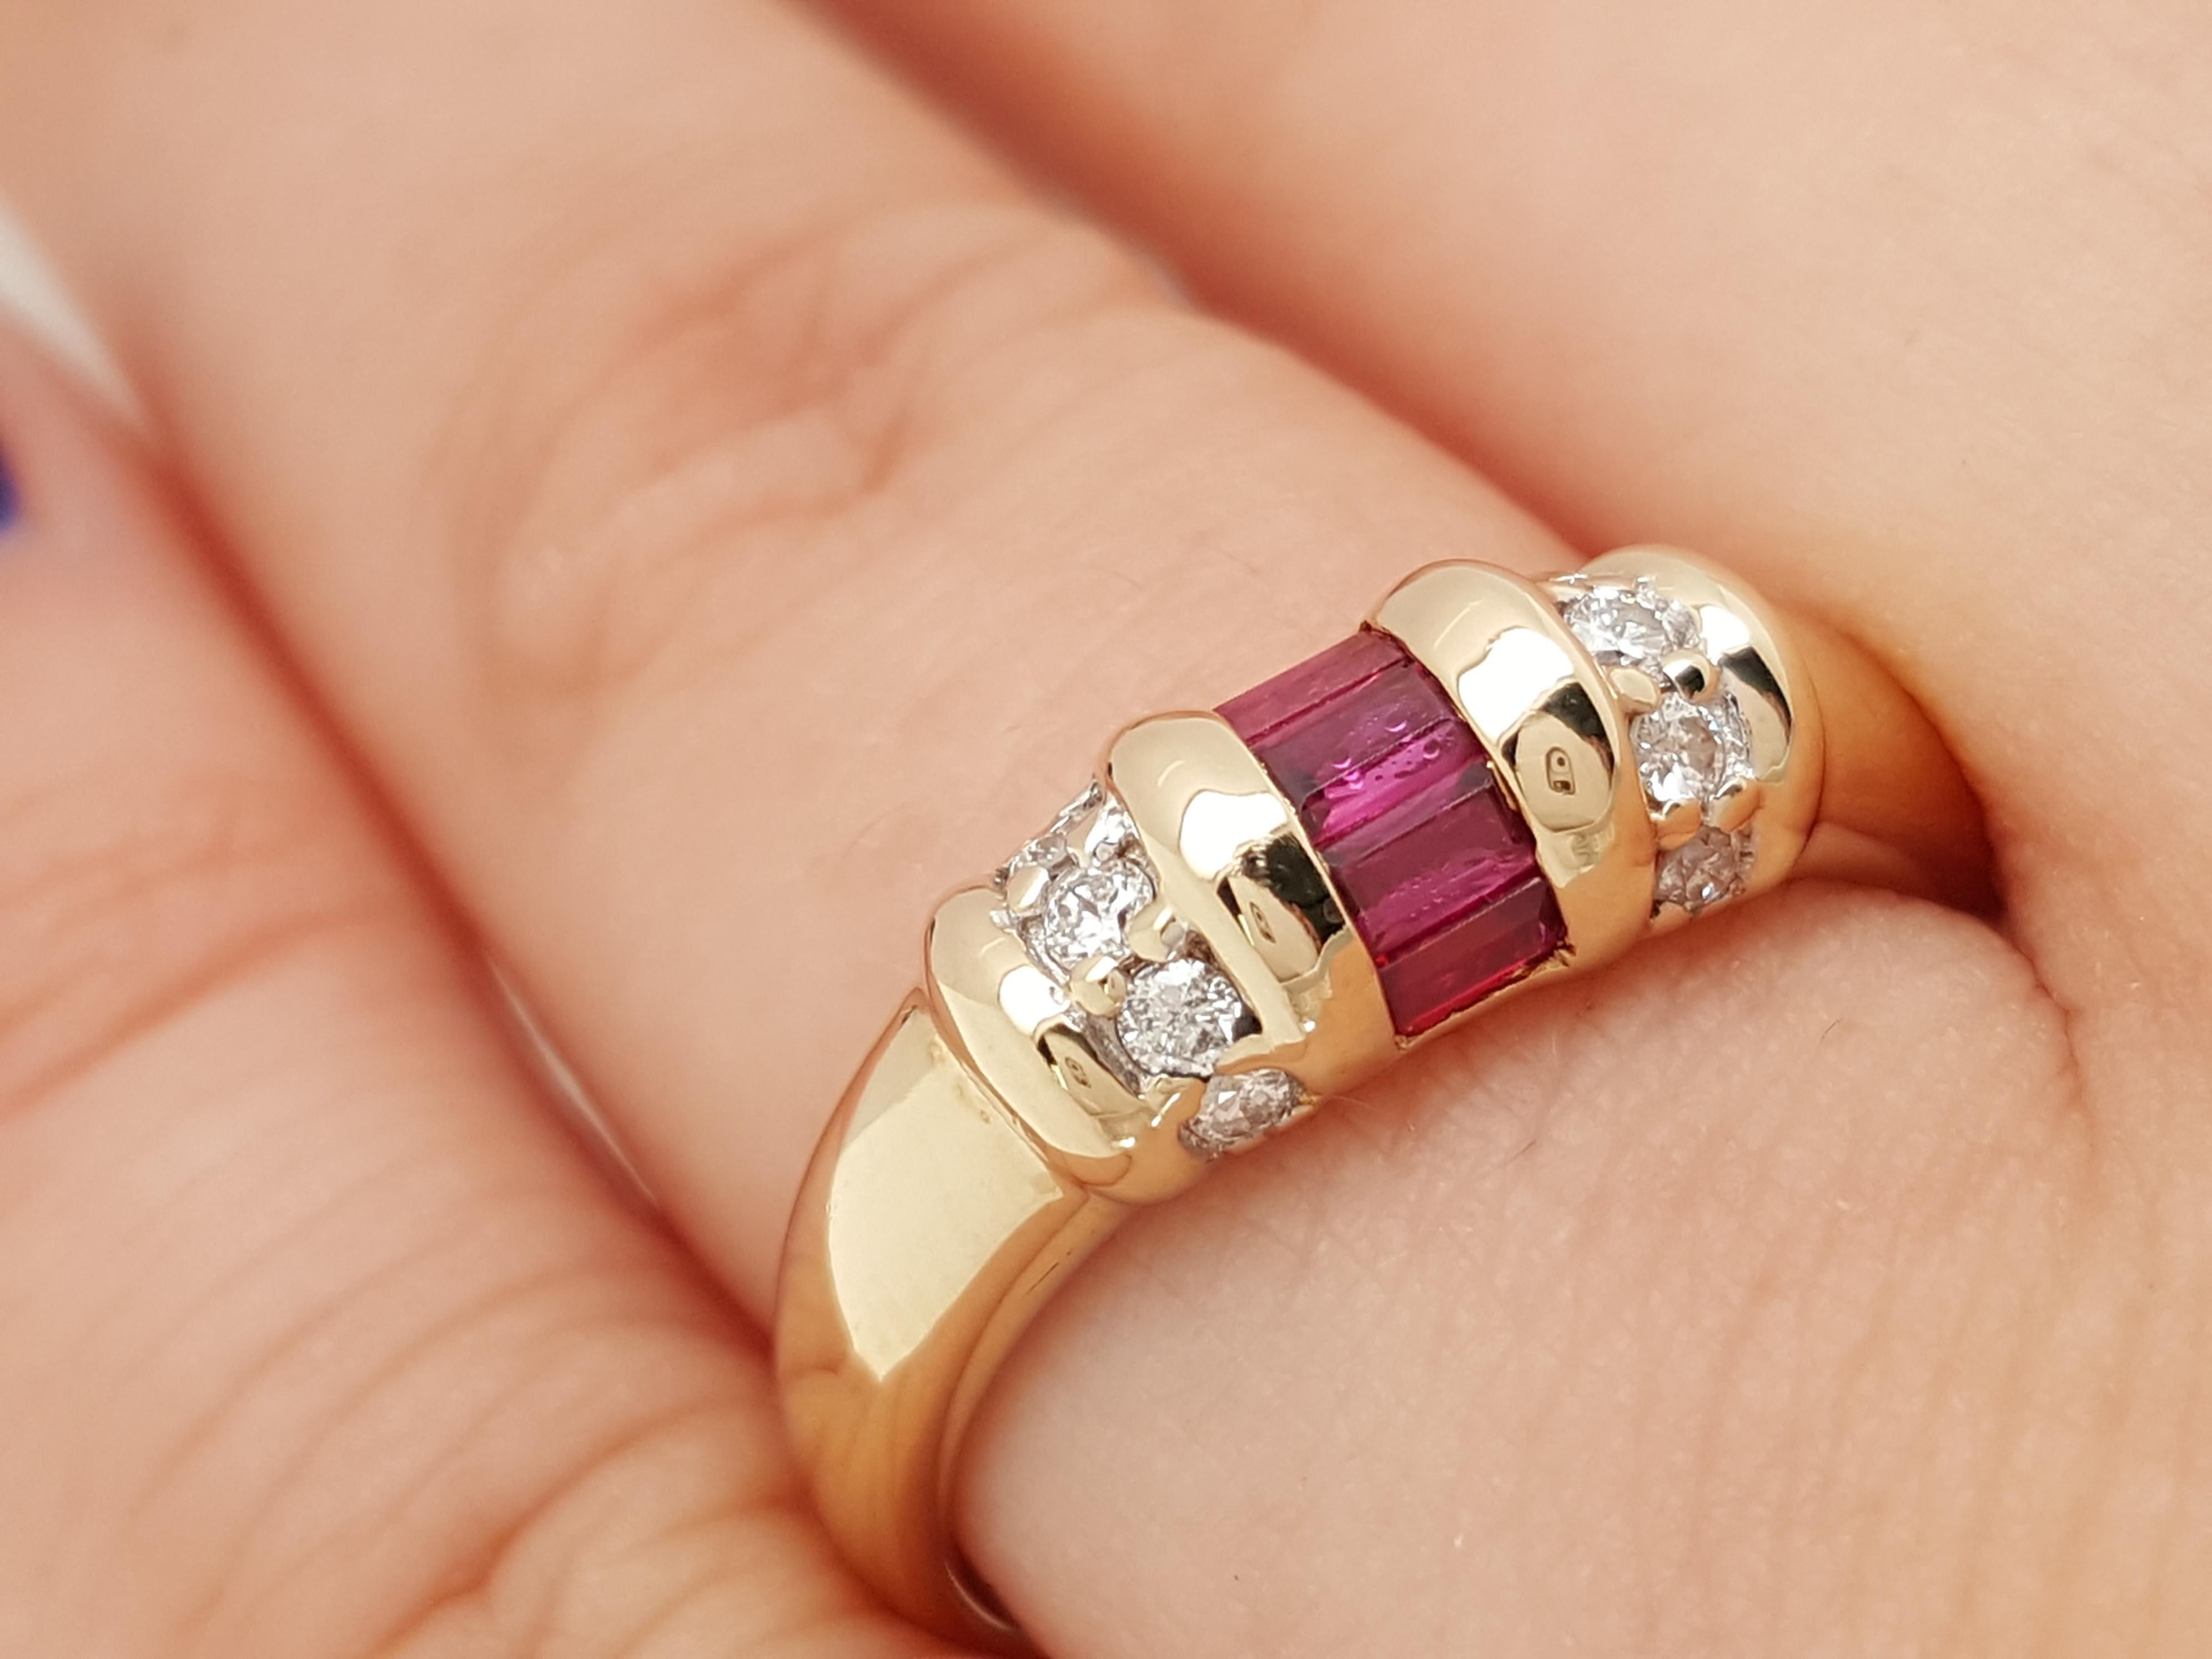 Il s'agit d'un exemple exquis de bracelet vintage en rubis et diamant. Elle est réalisée en or jaune et son centre est orné de 5 rubis rouges baguettes de la plus haute qualité, accentués par 6 diamants ronds de taille brillante.  Il s'agit d'un